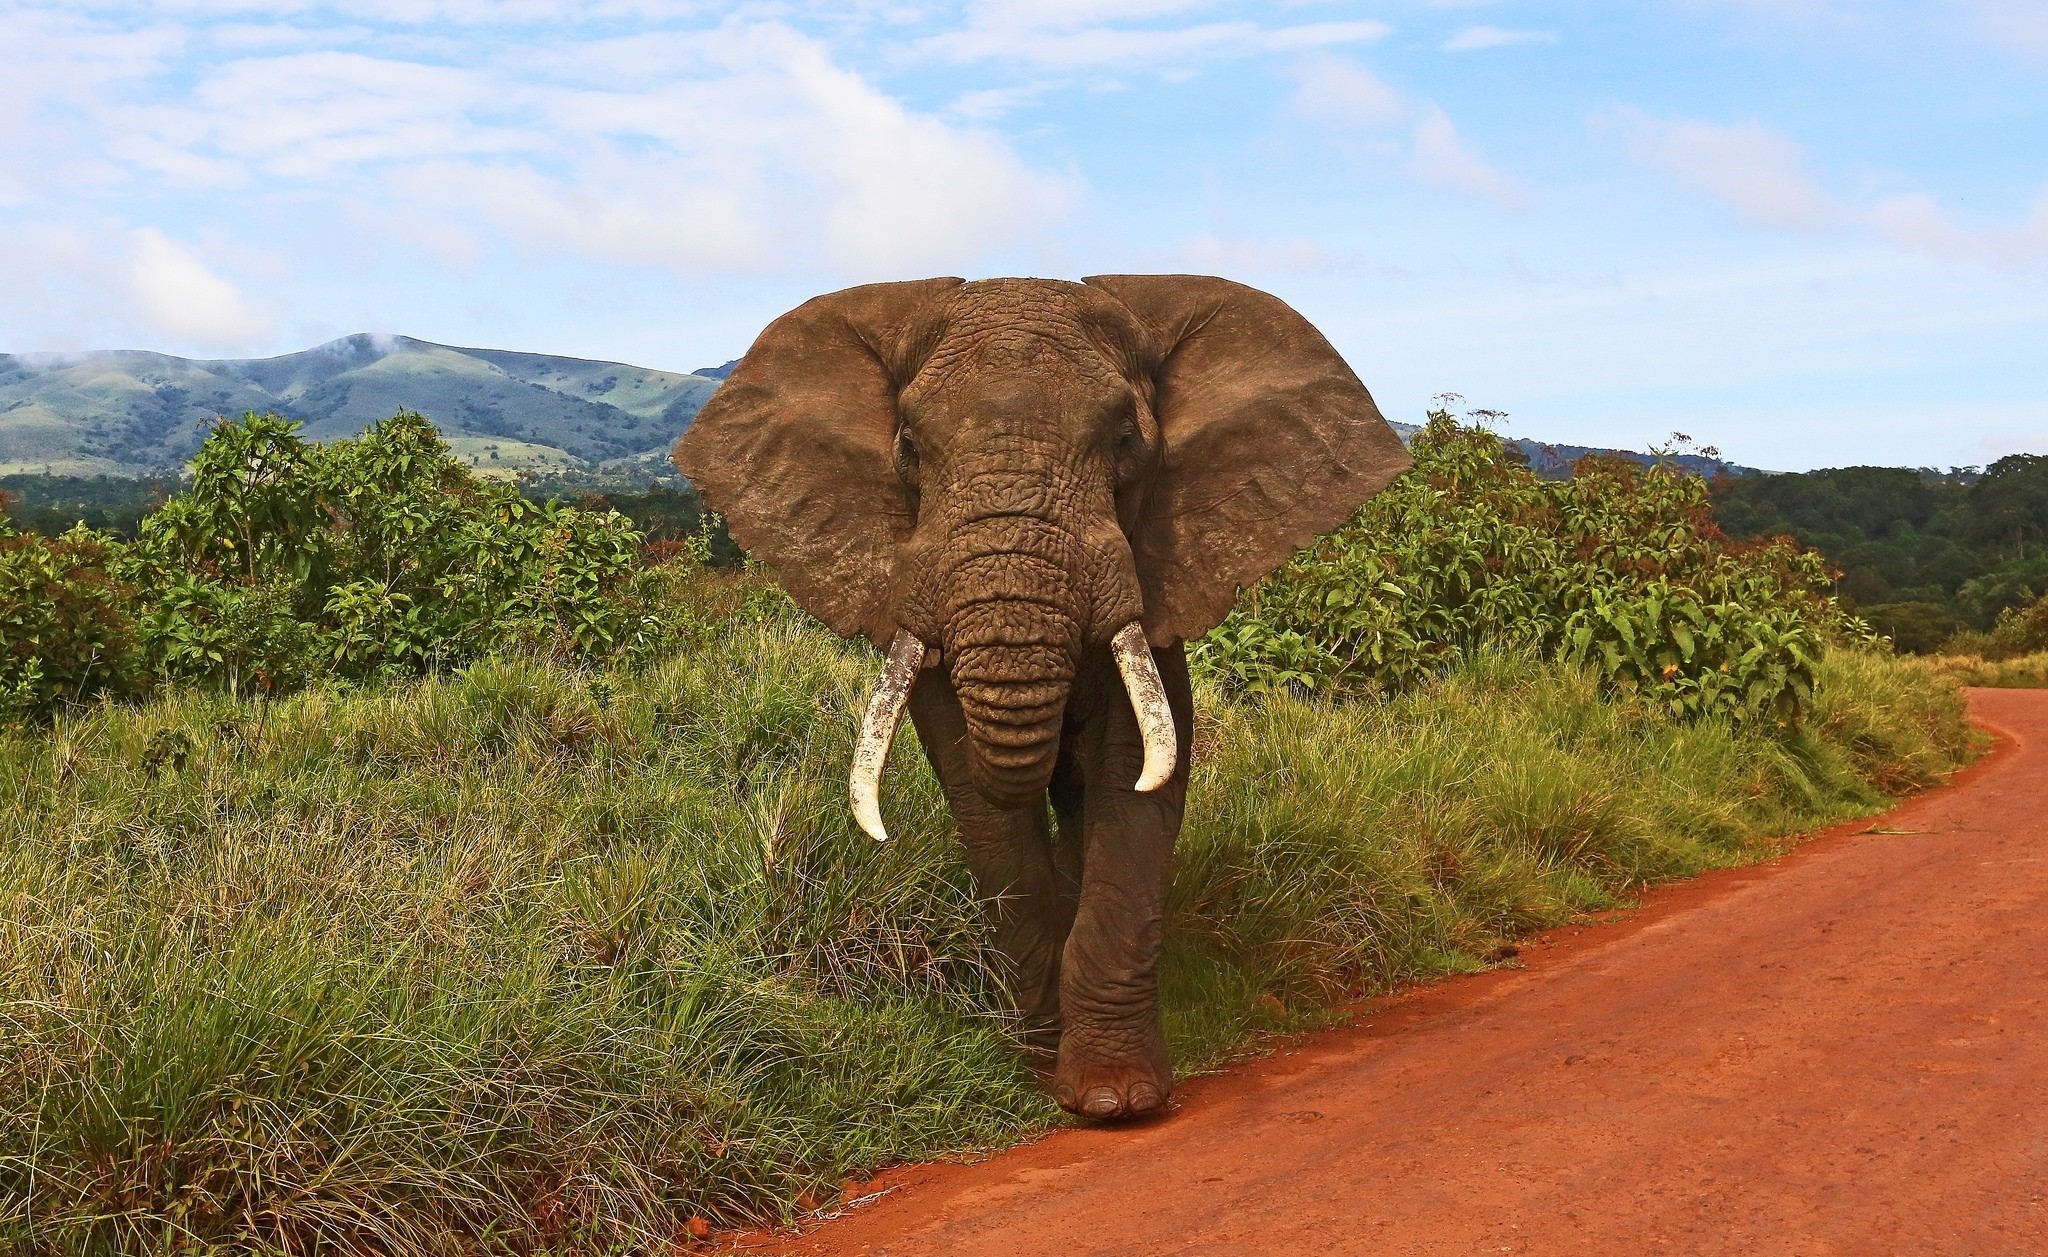 General 2048x1257 animals elephant mammals wildlife Africa hills